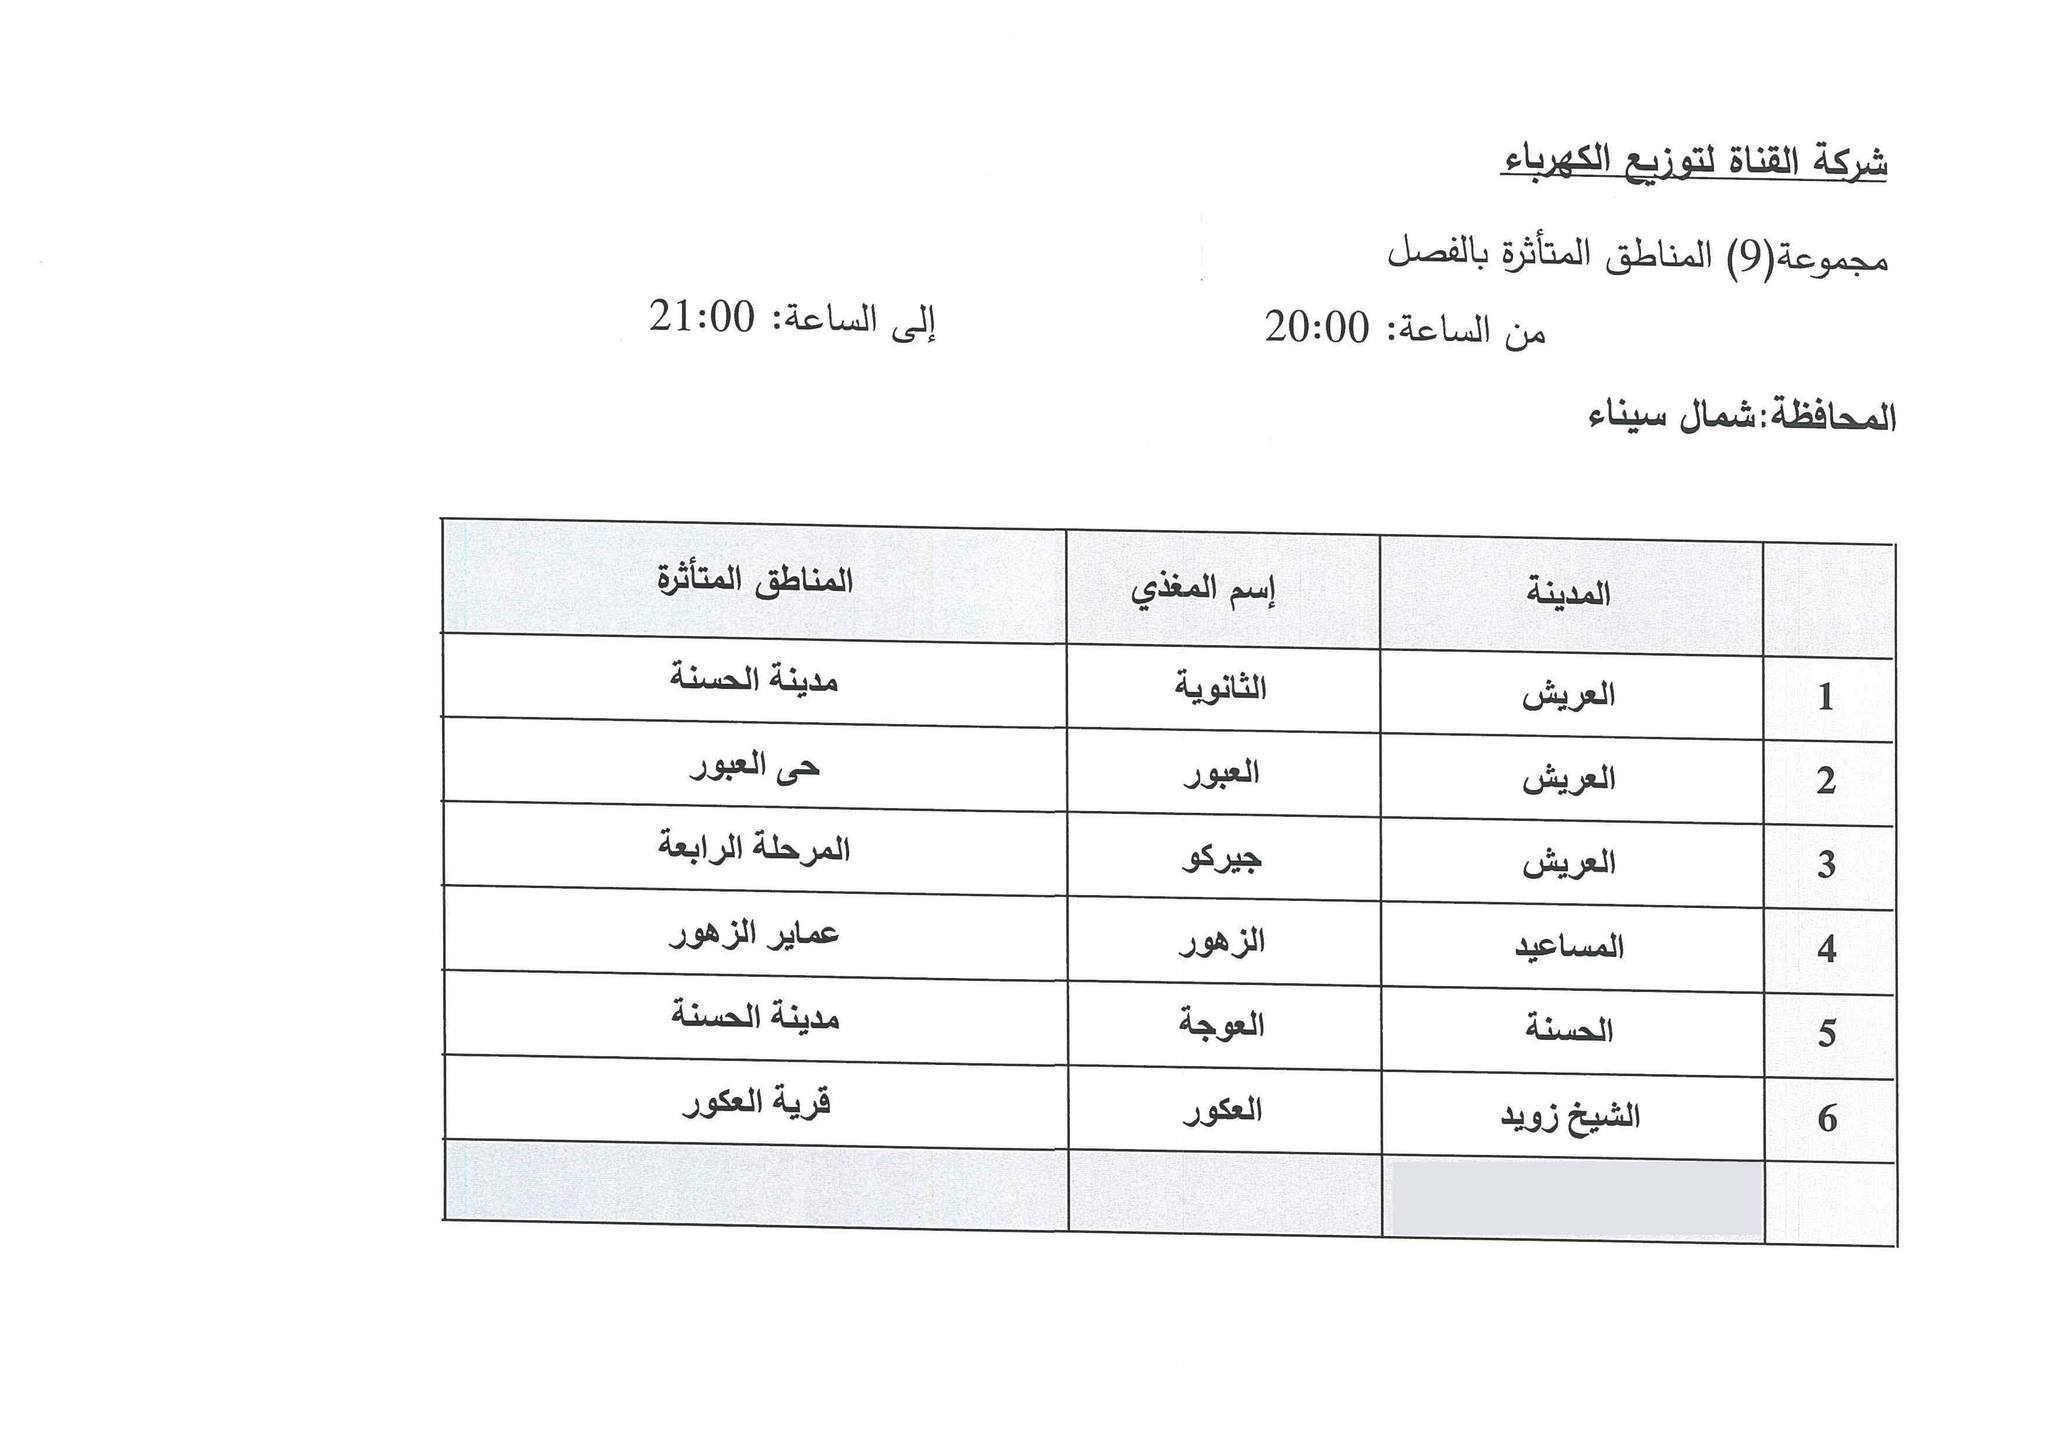 جدول مواعيد تخفيف الأحمال الكهربائية فى محافظة شمال سيناء (5)